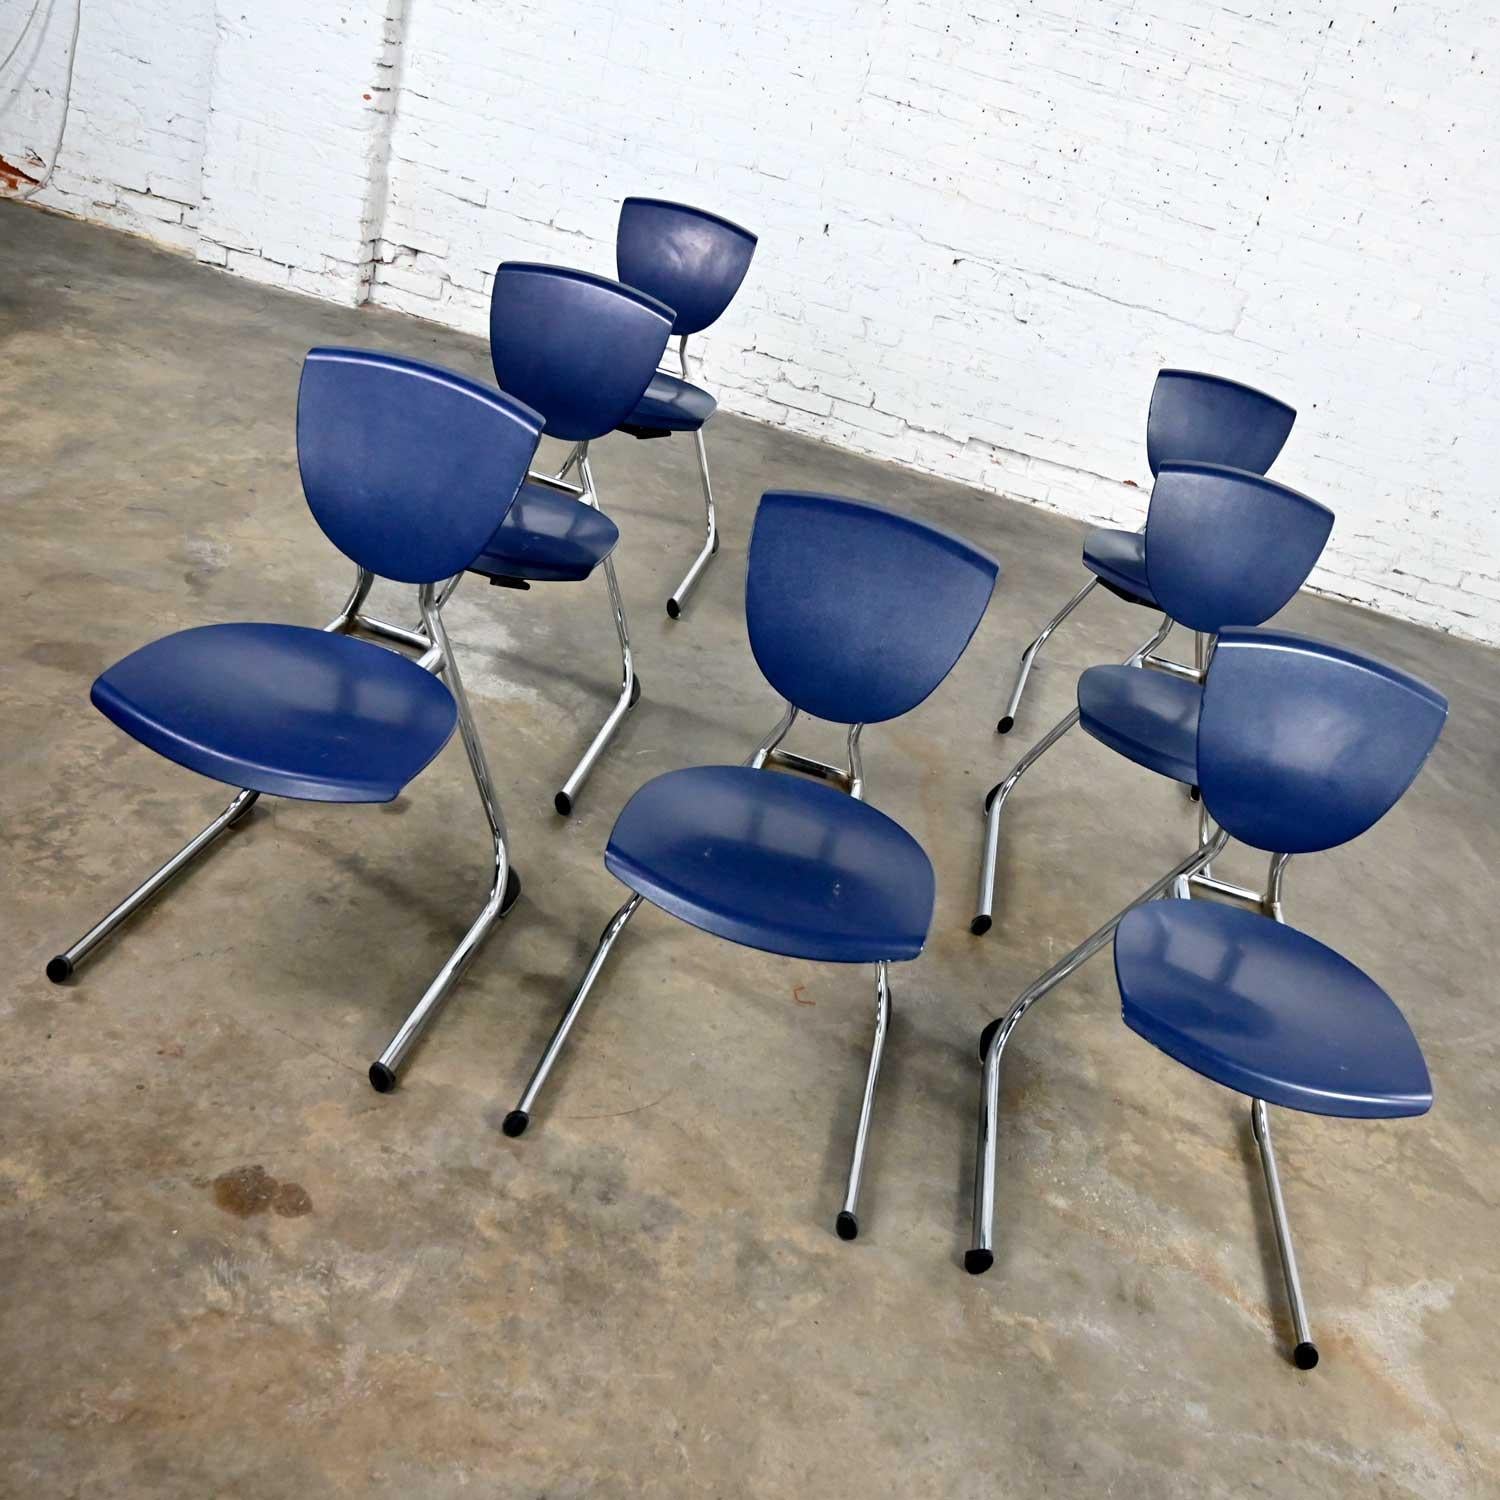 Superbes chaises de salle à manger Intellect vintage moderne en plastique bleu foncé et chrome à piétement luge inversé par Krueger International (a.k.a.) KI. 7 places assises au total. Très bon état, tout en gardant à l'esprit qu'il s'agit d'un